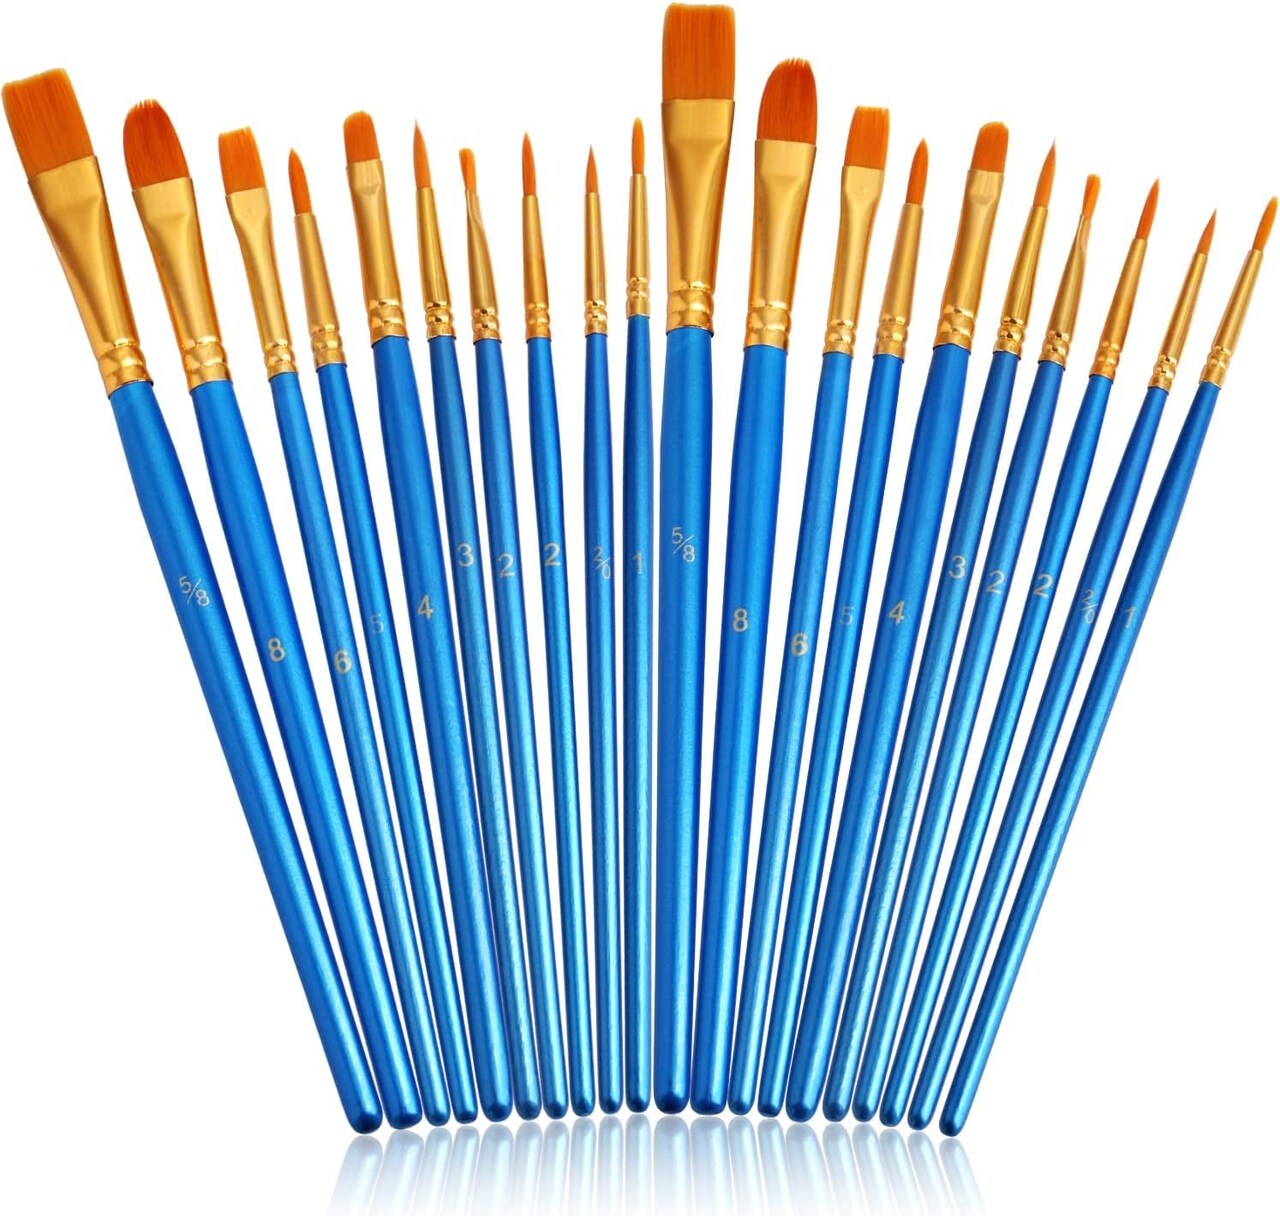 Paint Brushes Set,20 Pcs round Pointed Tip Paintbrushes Nylon Hair